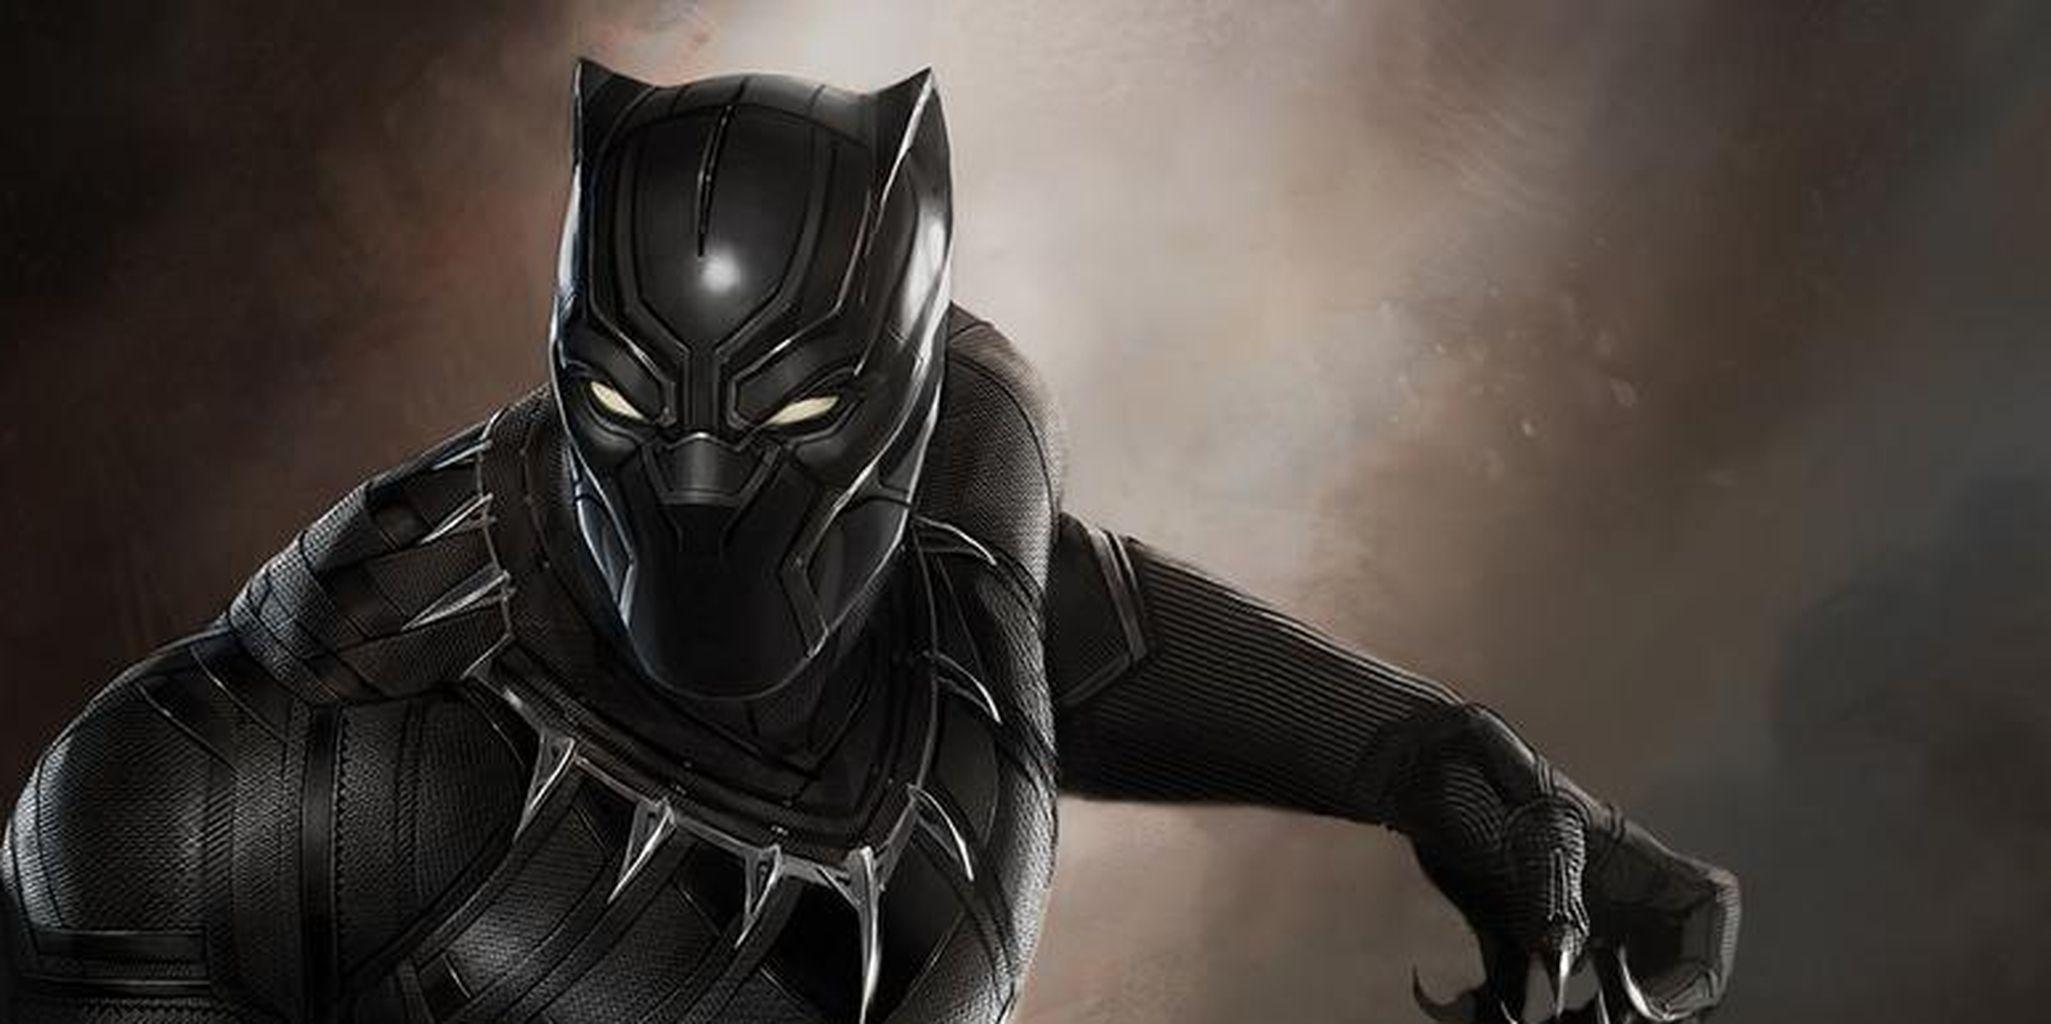 Black Panther, Captain Marvel films confirmed in major Marvel